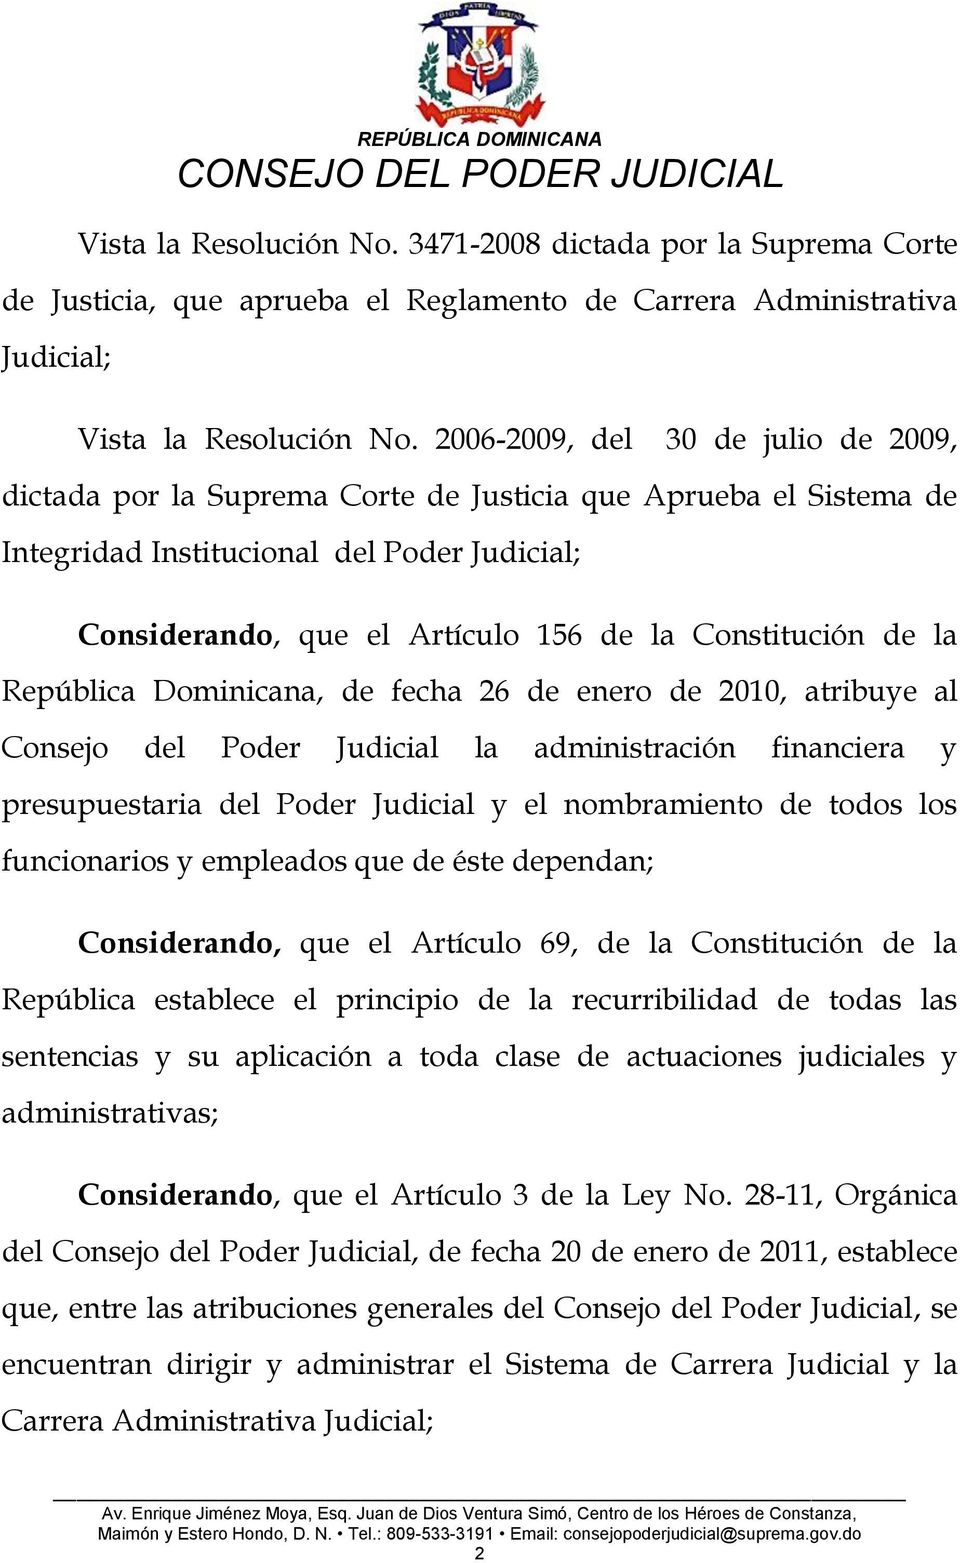 Constitución de la República Dominicana, de fecha 26 de enero de 2010, atribuye al Consejo del Poder Judicial la administración financiera y presupuestaria del Poder Judicial y el nombramiento de